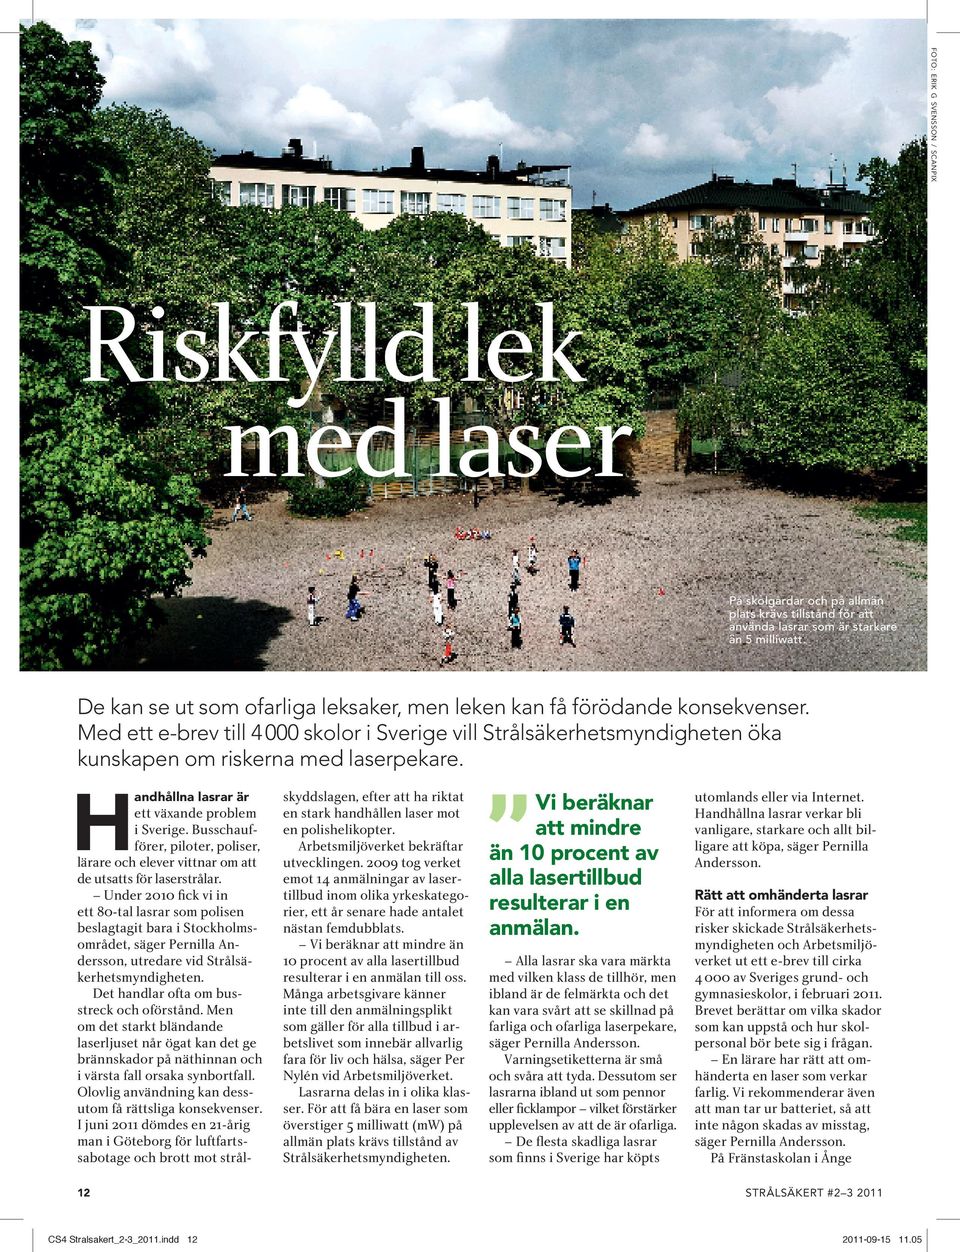 H andhållna lasrar är ett växande problem i Sverige. Busschaufförer, piloter, poliser, lärare och elever vittnar om att de utsatts för laserstrålar.